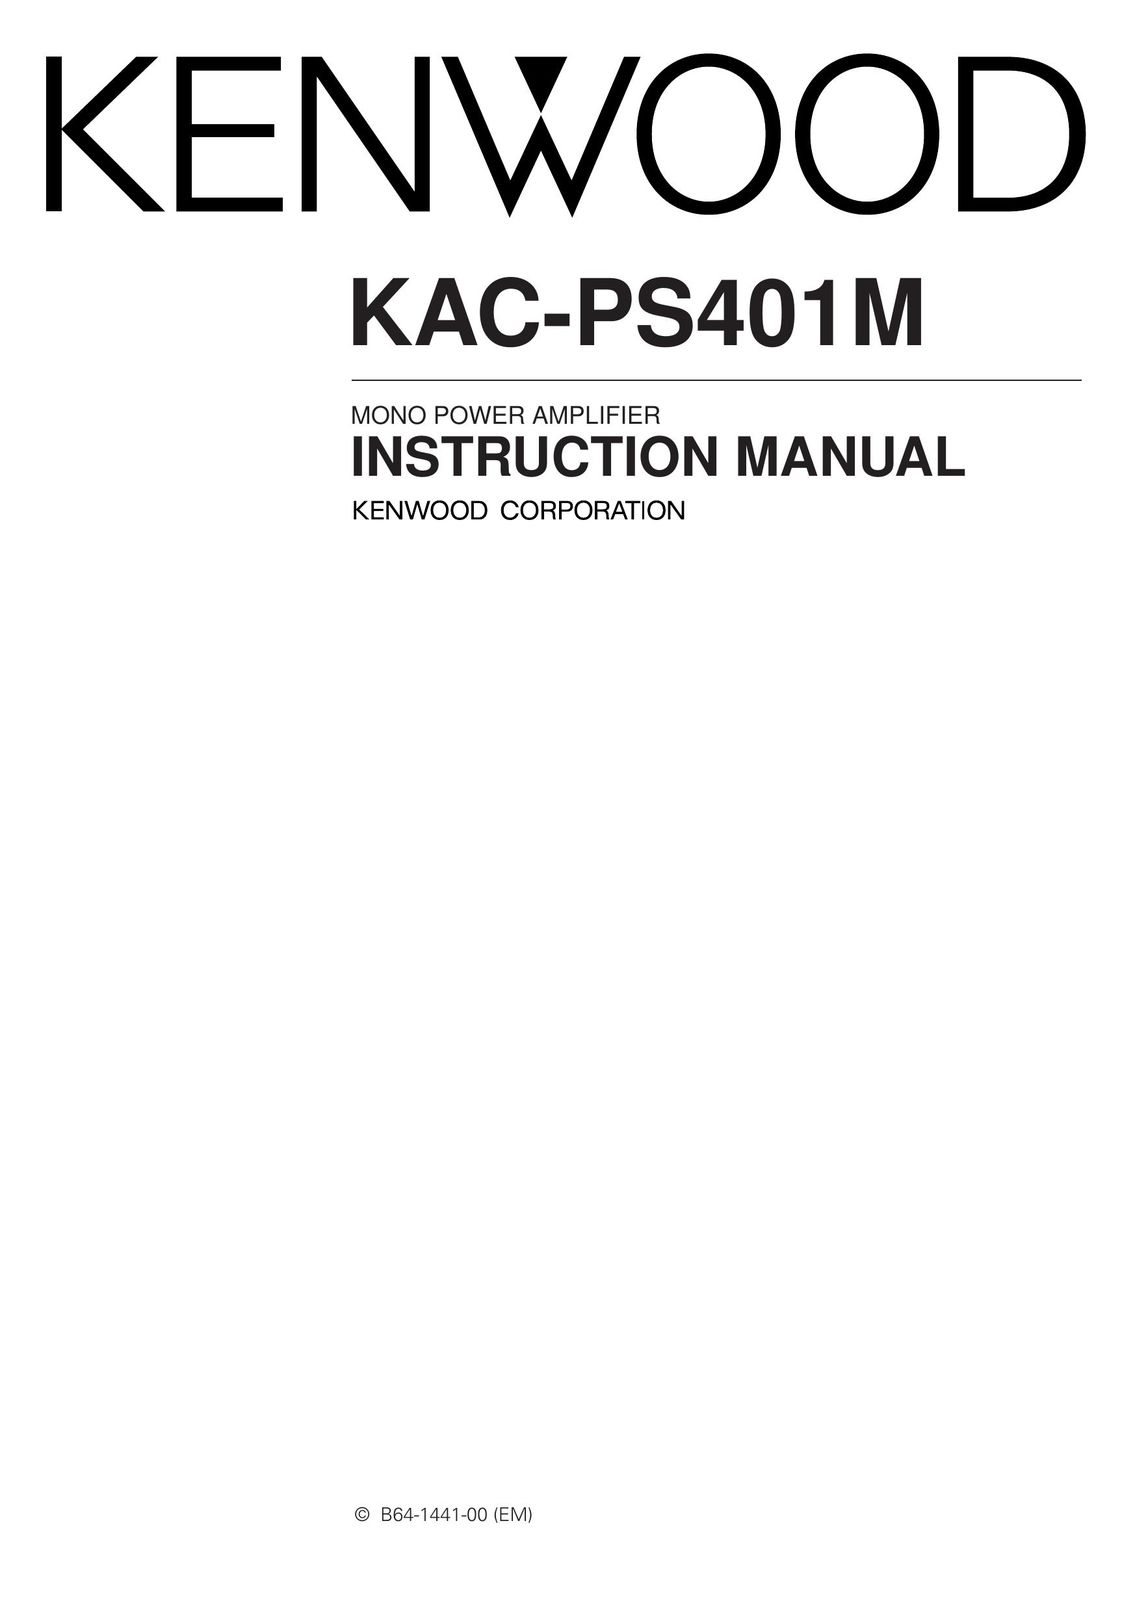 Kenwood KAC-PS401M Car Amplifier User Manual